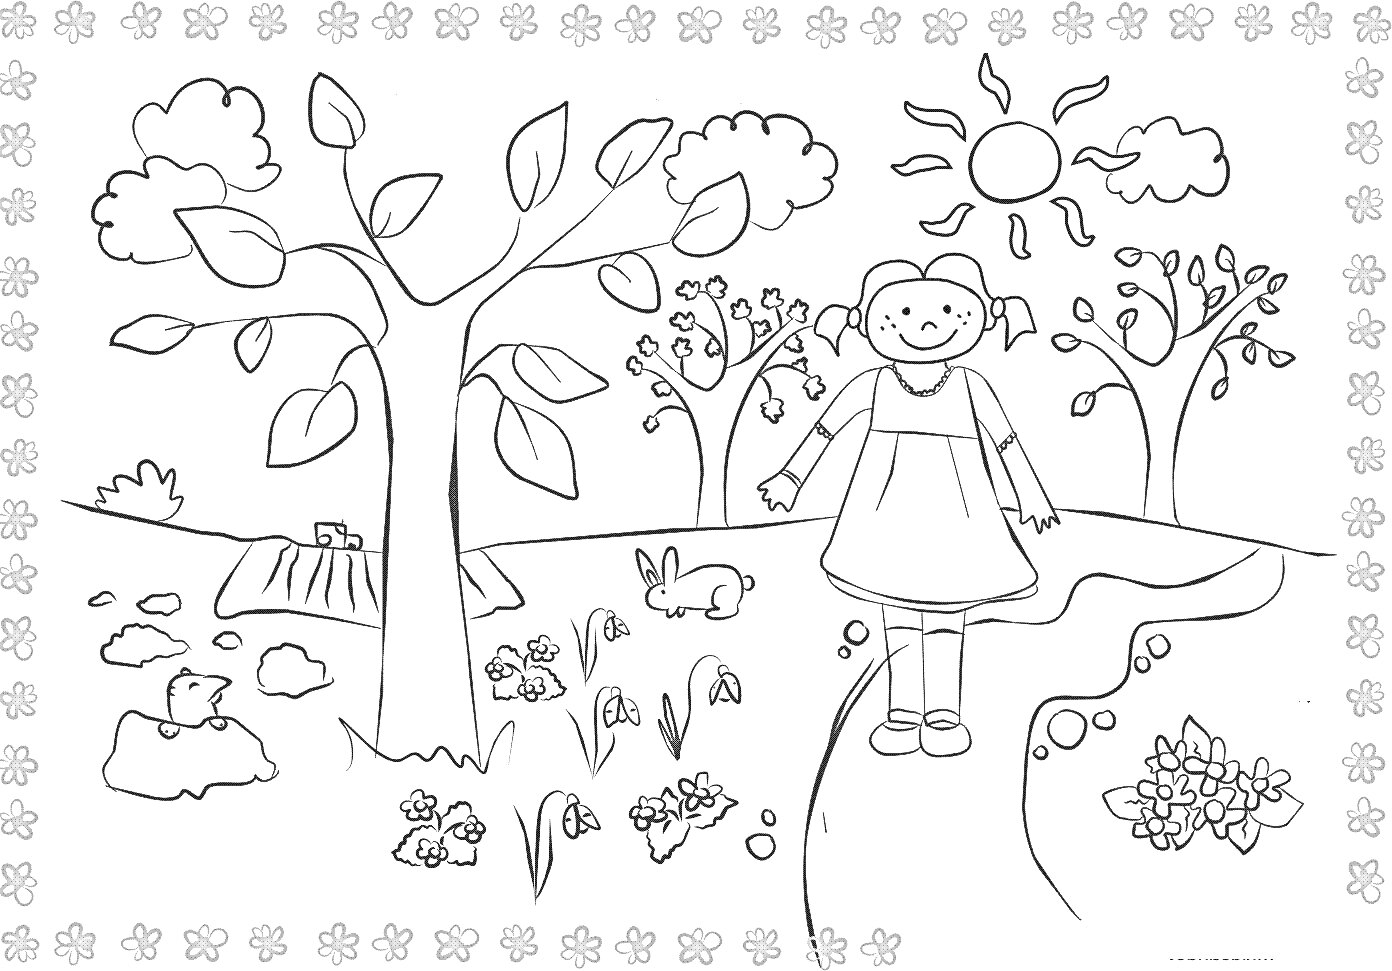 Раскраска Девочка на летней полянке с деревьями, кроликом, птицами, цветами и солнцем